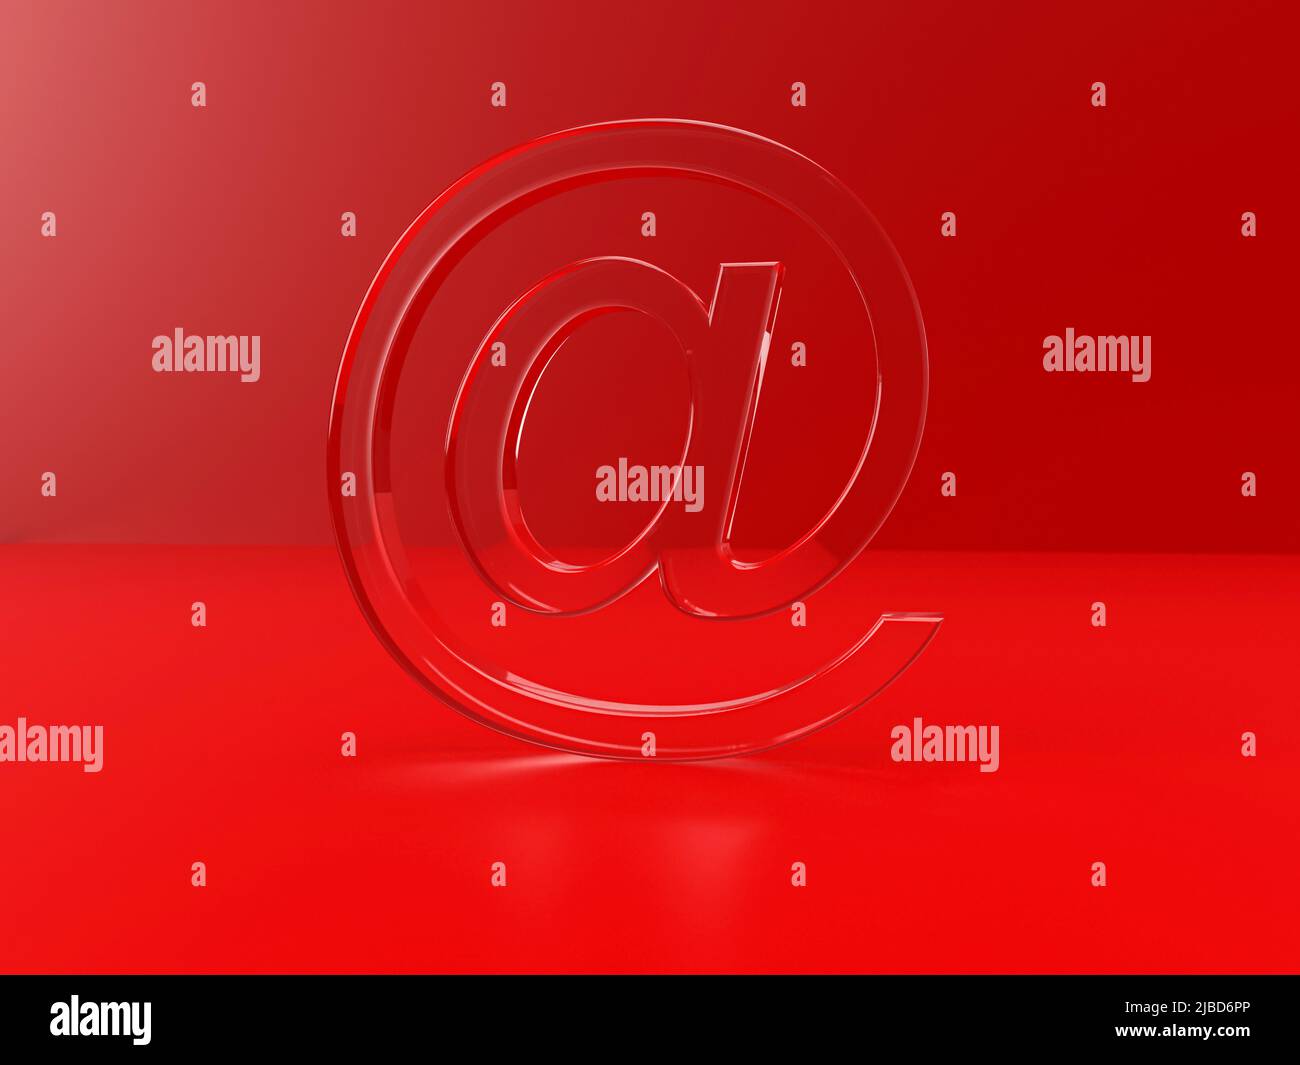 simbolo at per l'indirizzo e-mail come rendering in gel 3d in ambiente di colore rosso Foto Stock